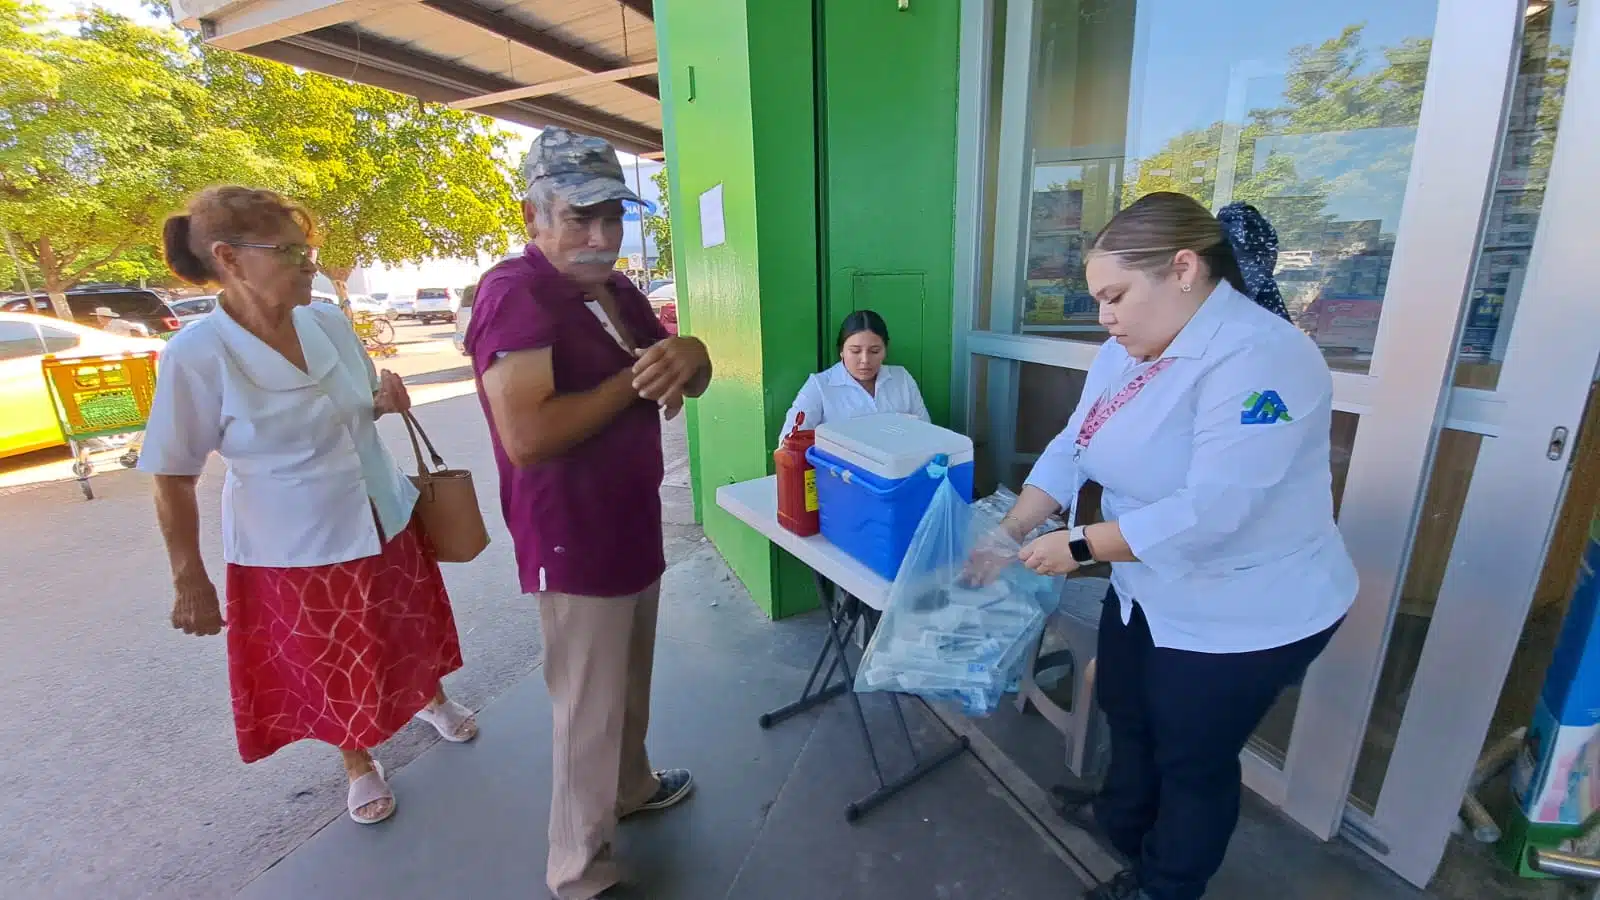 Personal de Centro de Salud vacuna a personas por las calles del centro de Los Mochis.